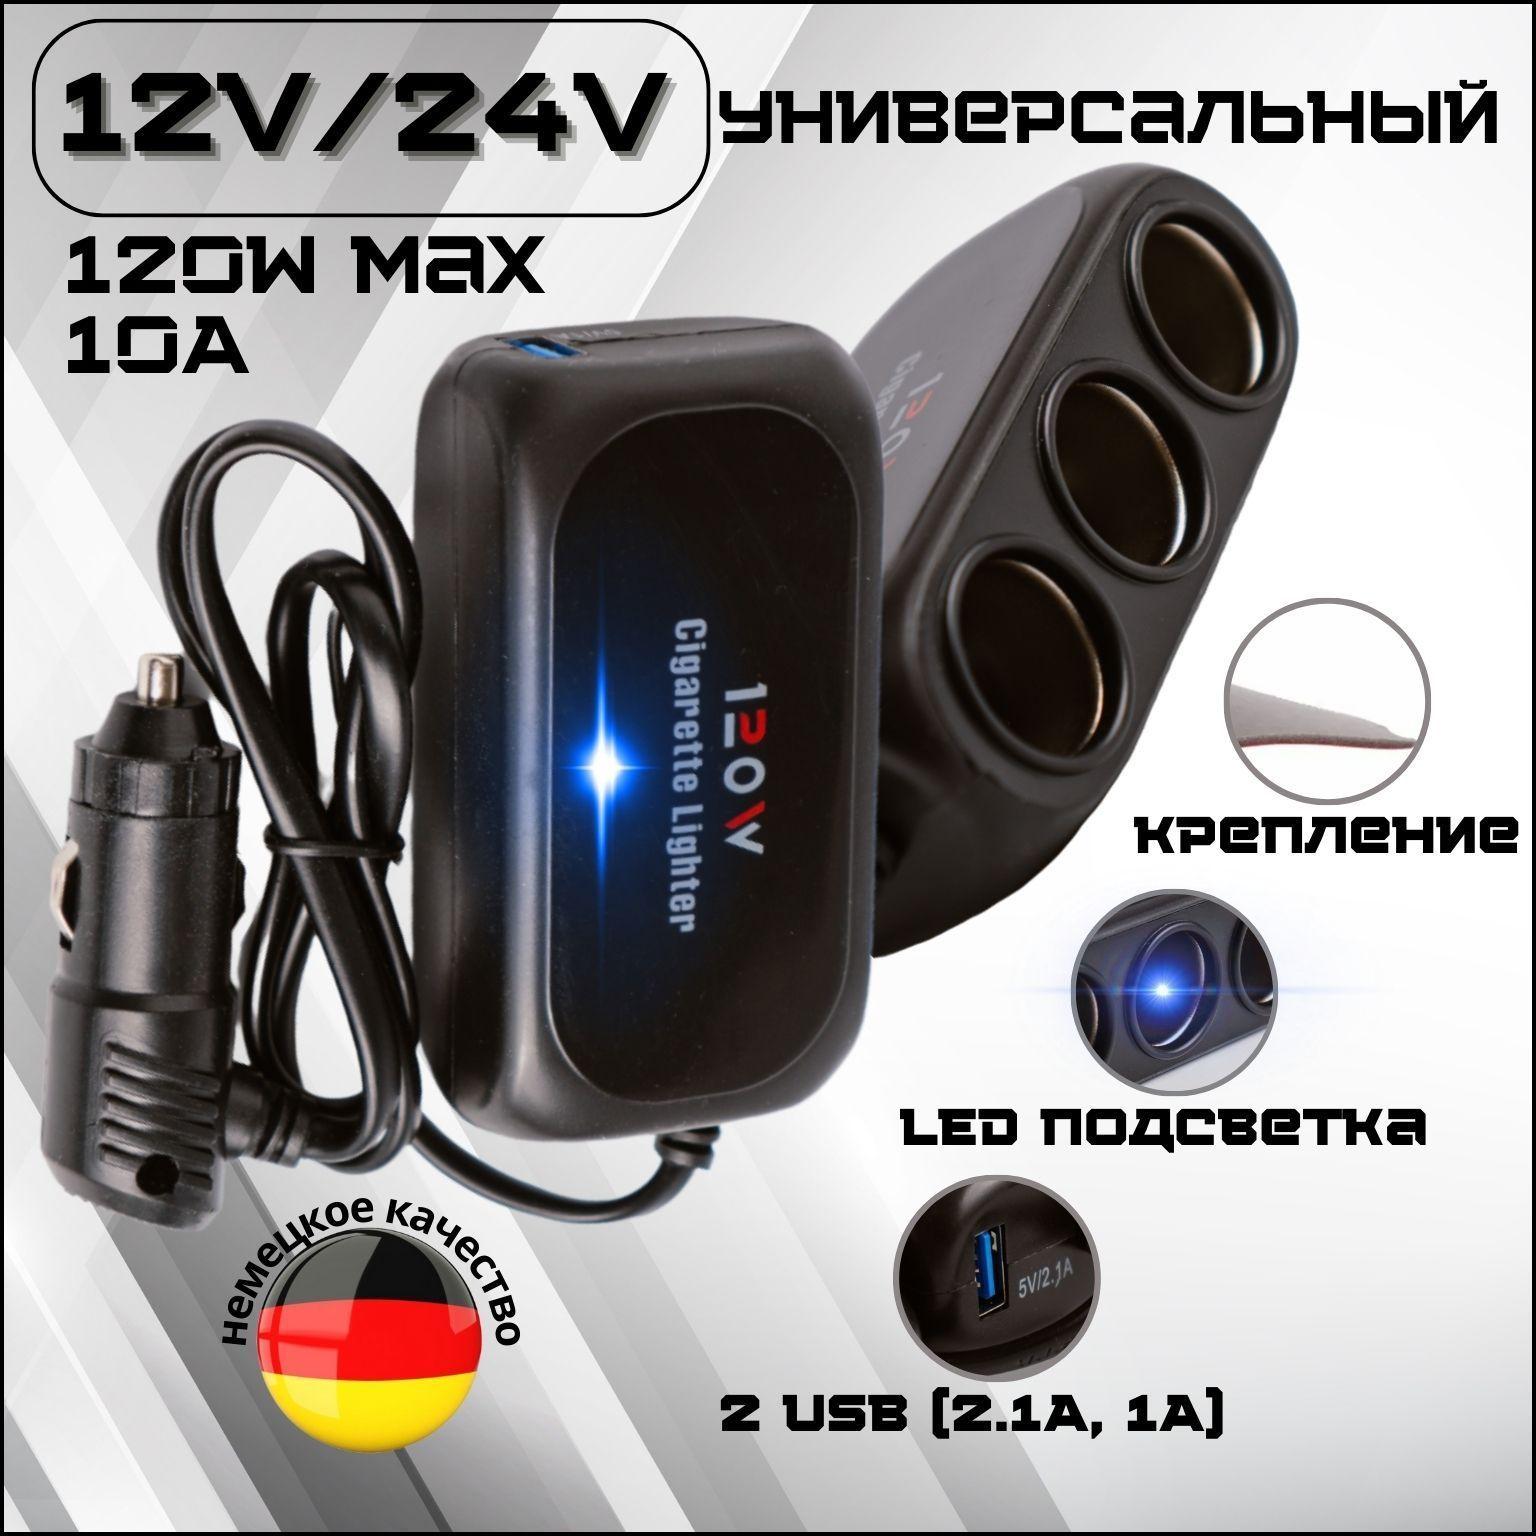 Универсальный разветвитель в прикуриватель с синей подсветкой 120W 3 гнезда, автомобильный адаптер для устройств на 3 выхода (12V-24V), розетка прикуривателя, 2 USB 5V (2.1A-1A), черный цвет, 1 шт.